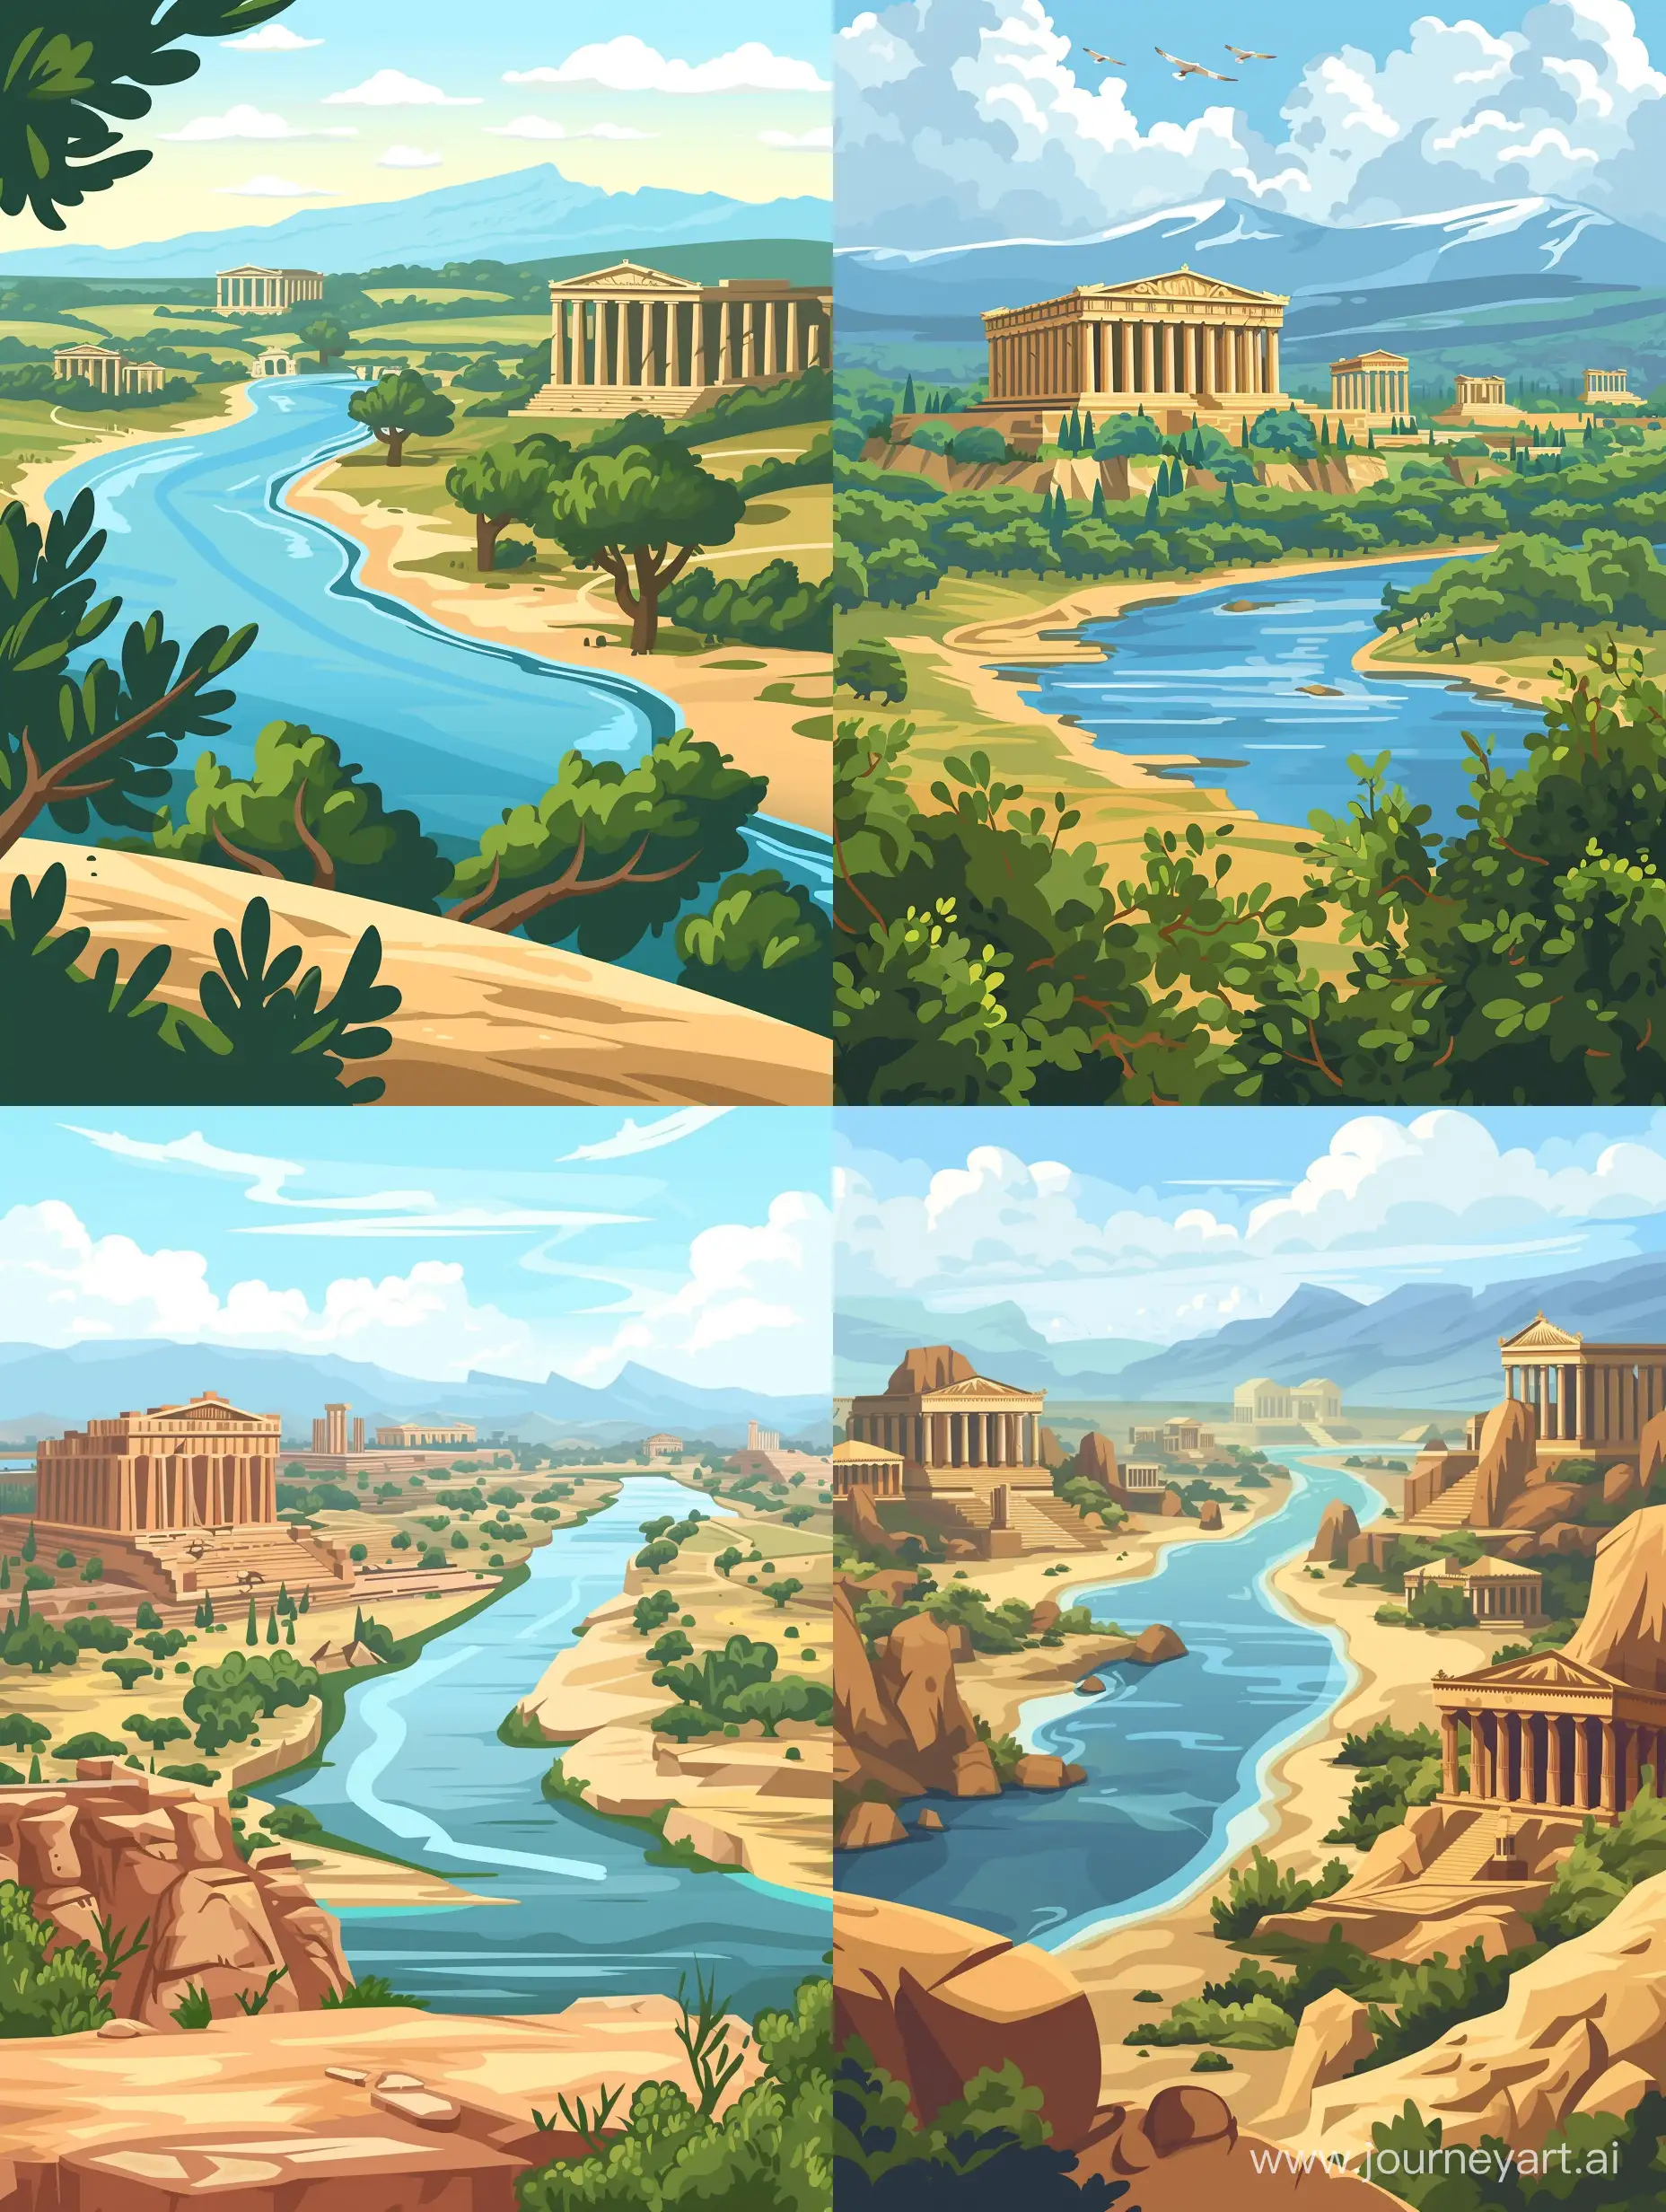 Стиль рисованный мультфильм. Горизонтальный пейзаж древней Греции. На переднем плане берег, на среднем река м храмы древней Греции.